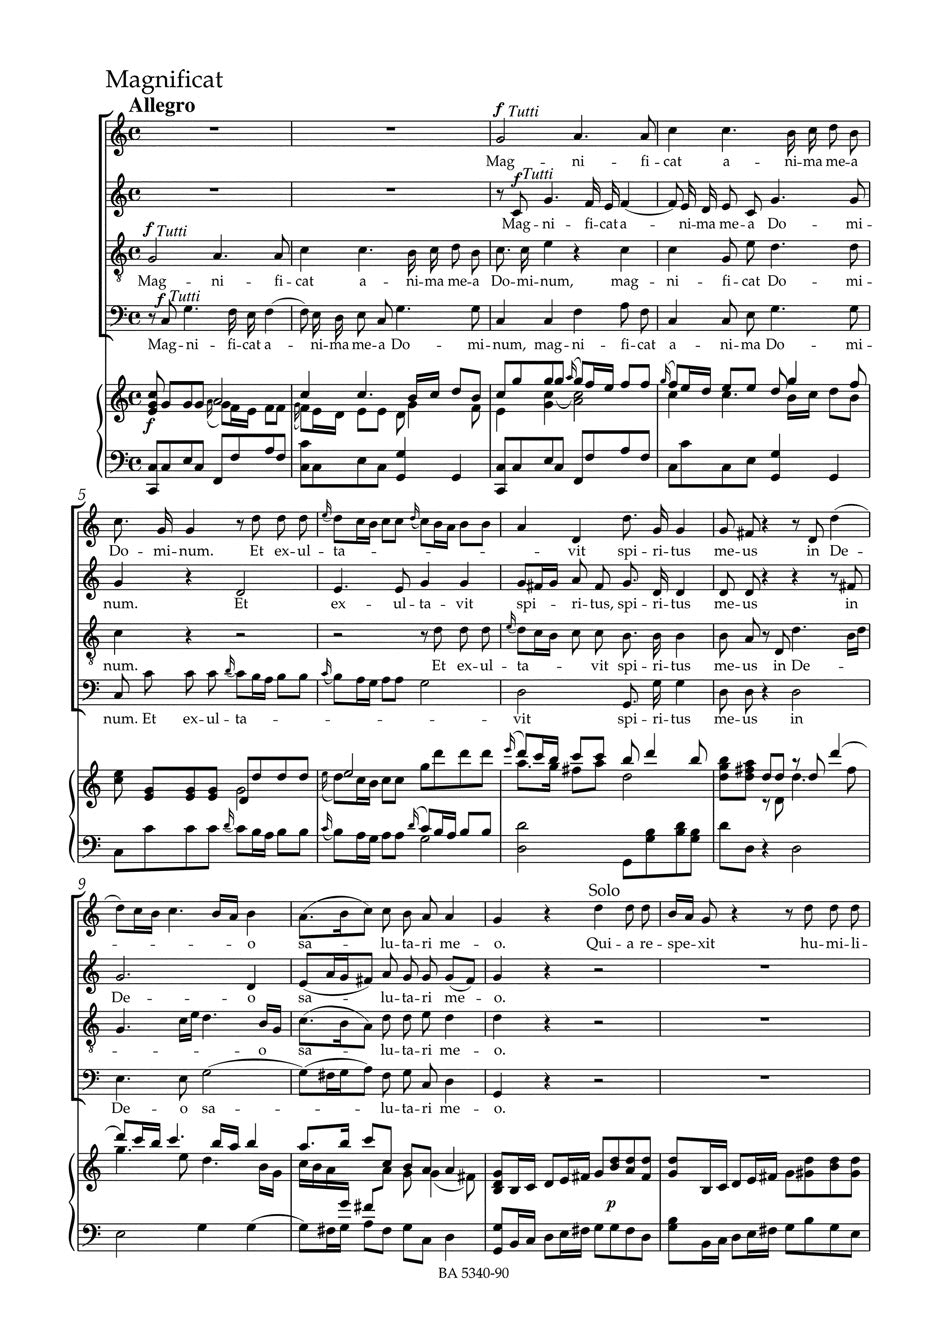 Mozart: Dixit et Magnificat, K. 193 (186g)